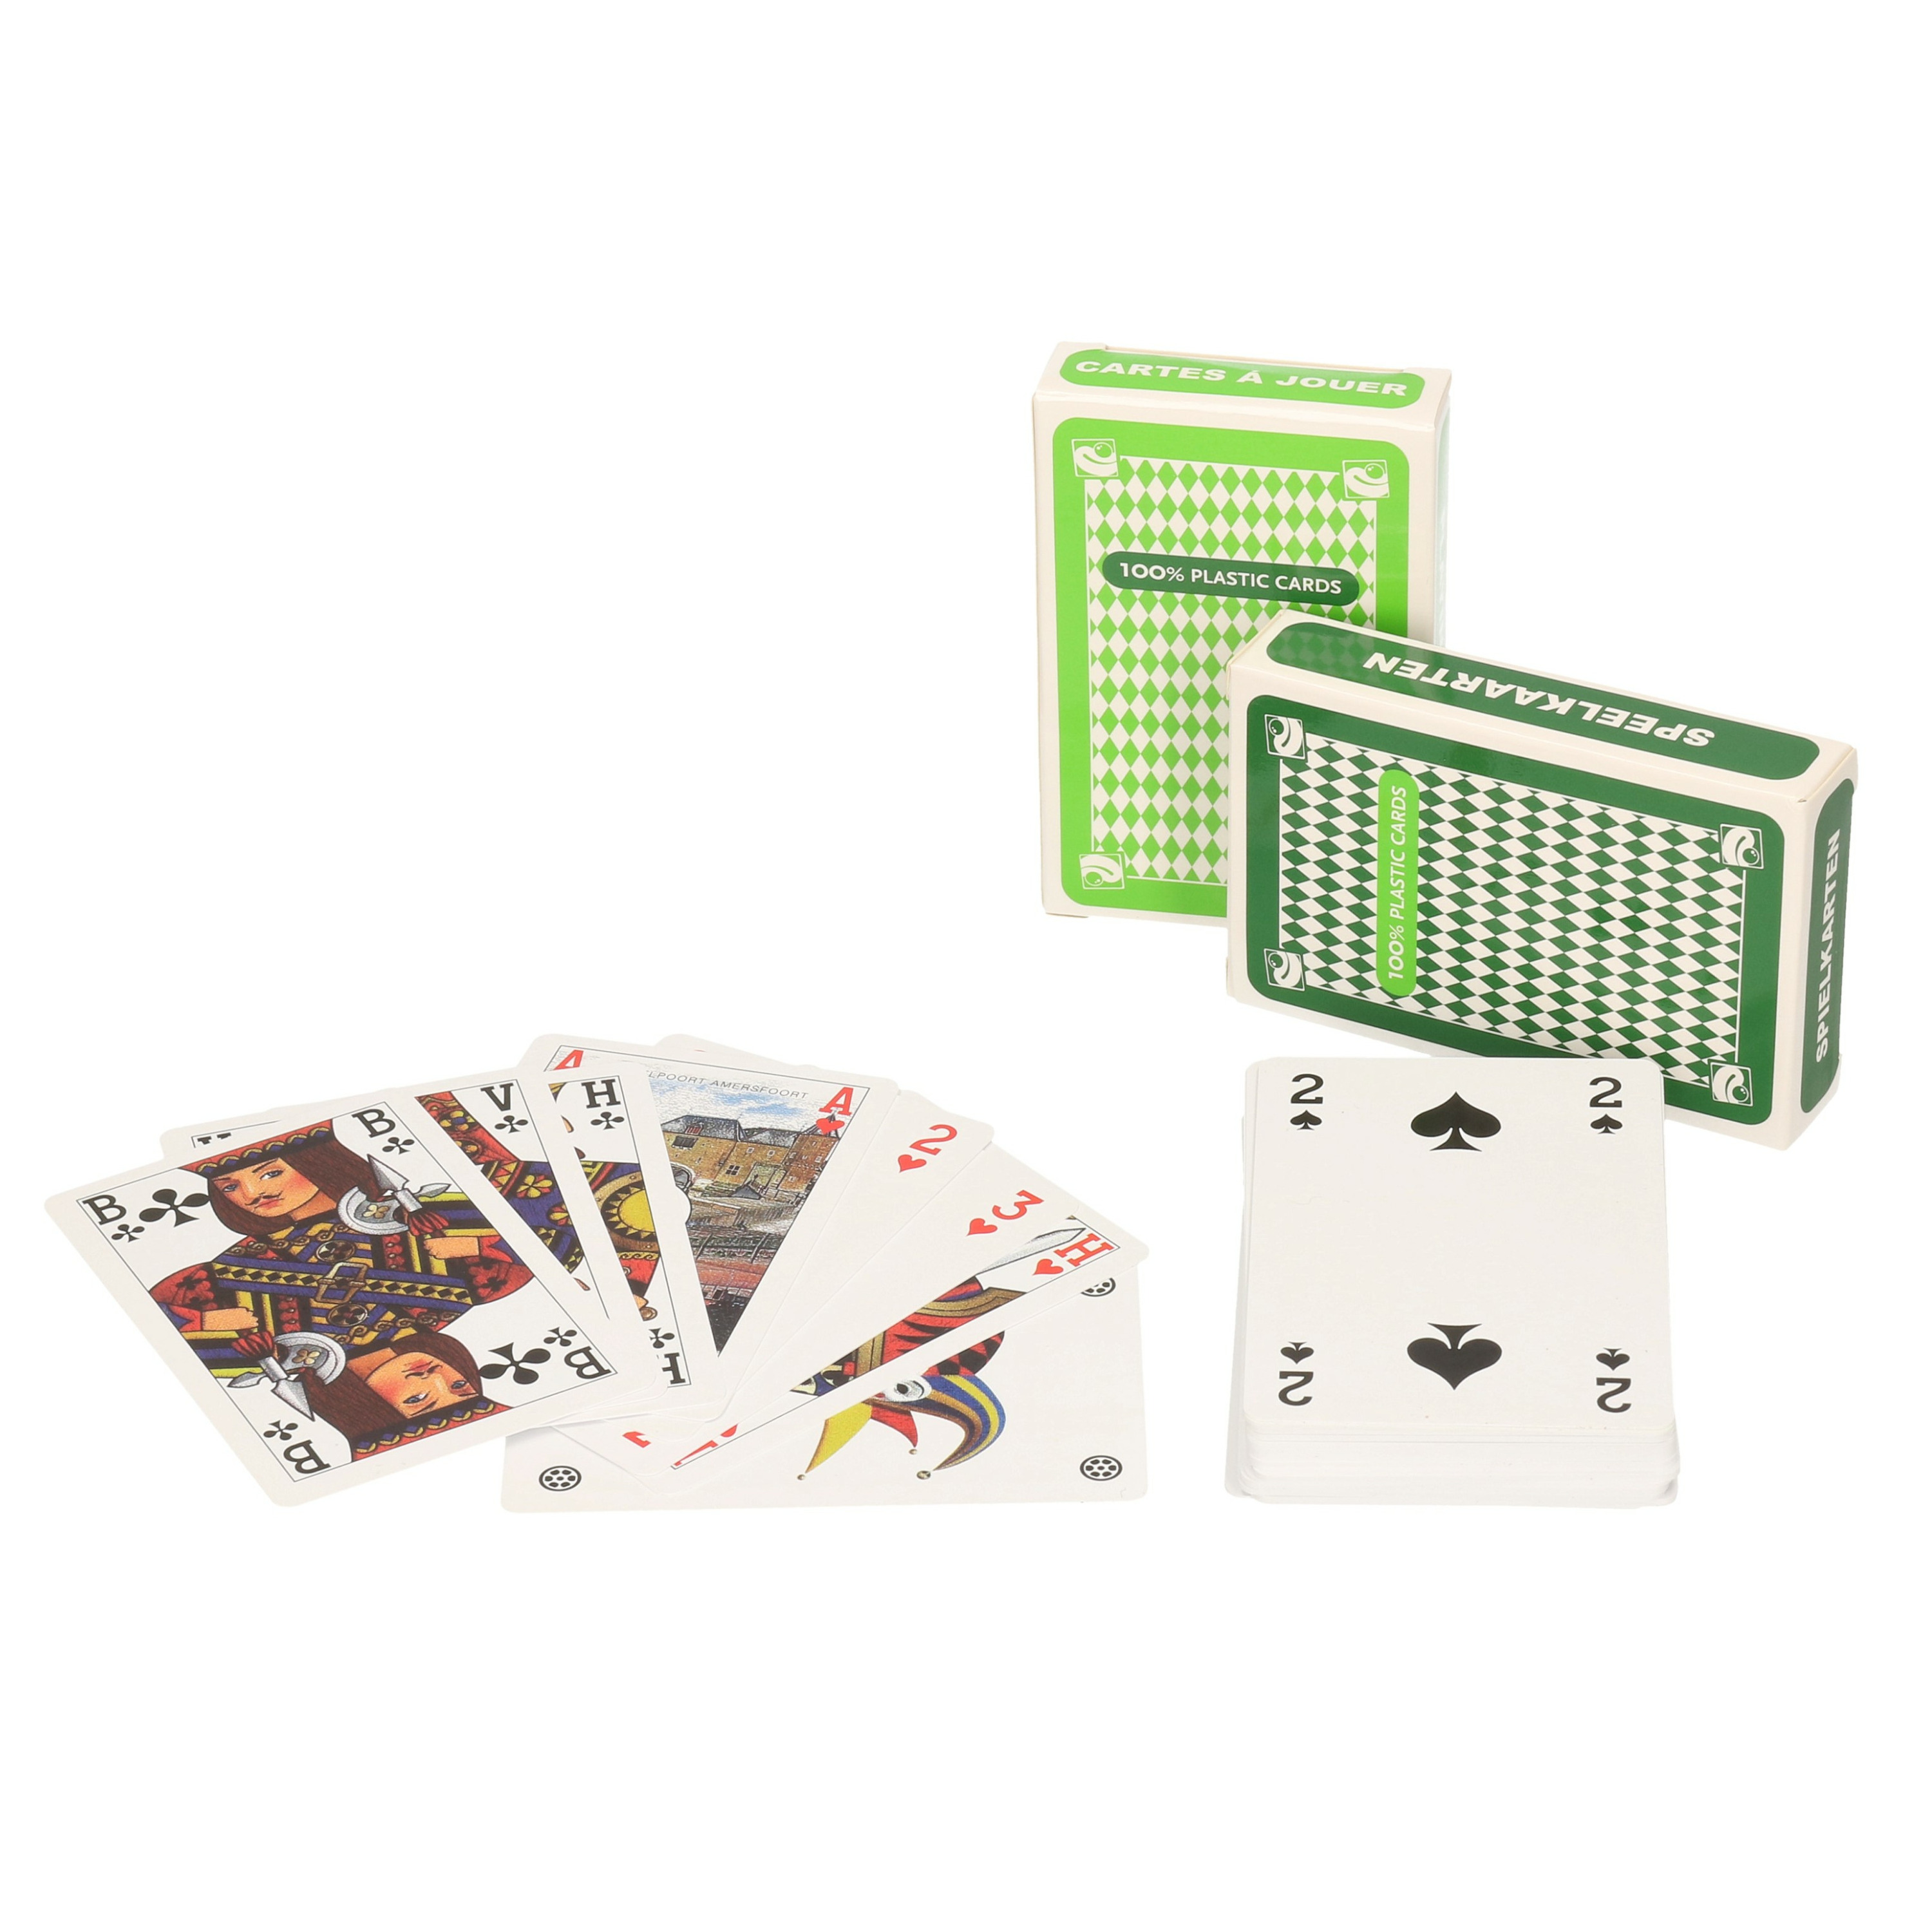 Afbeelding van Set van 4x clown games speelkaarten lichtgroen en donkergroen/plastic kaarten